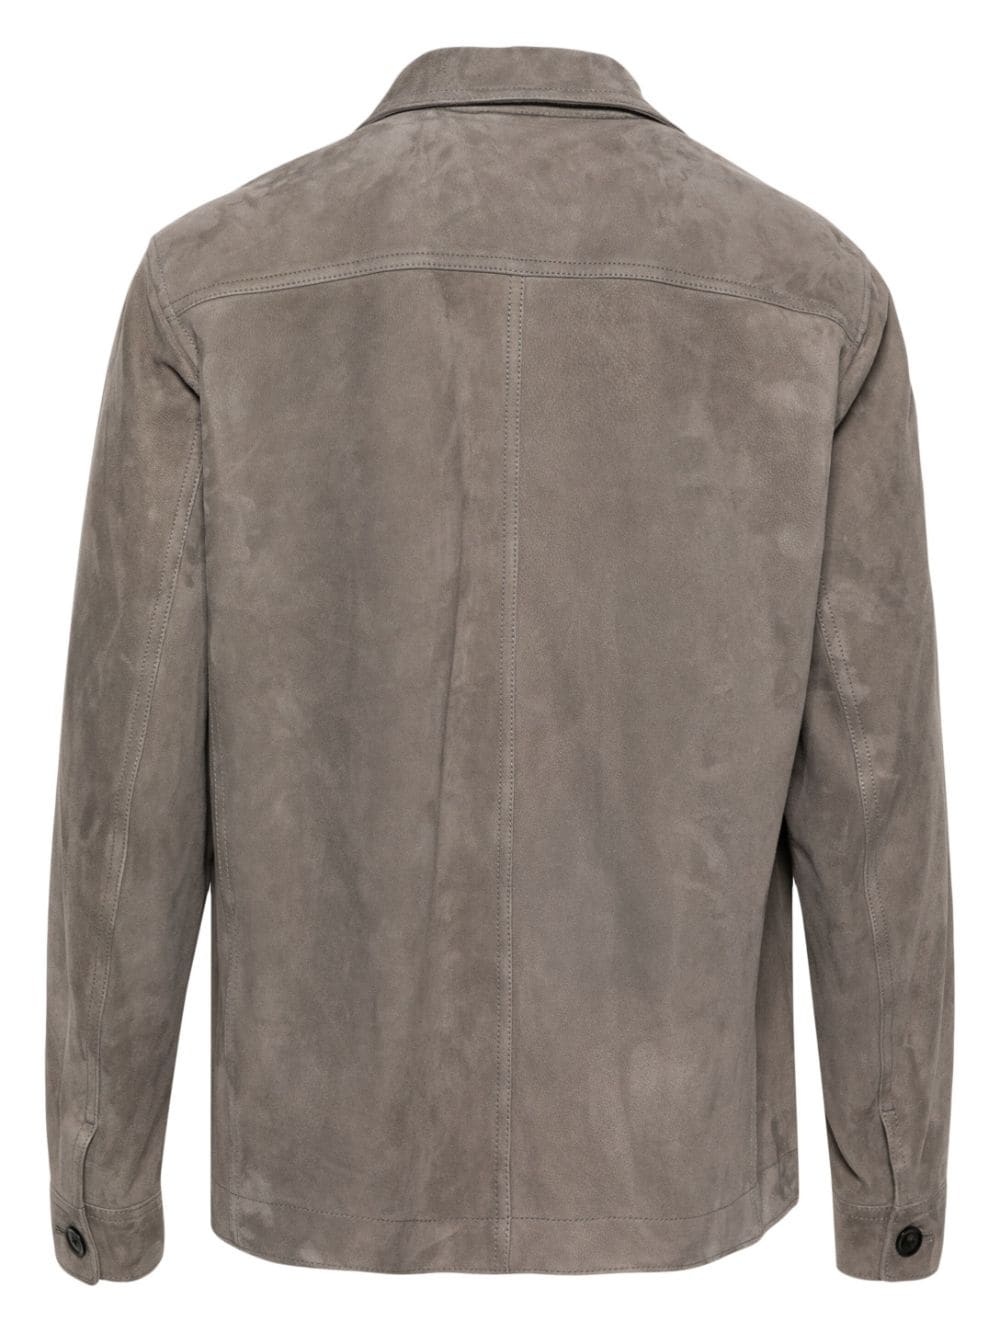 microsuede shirt jacket - 2